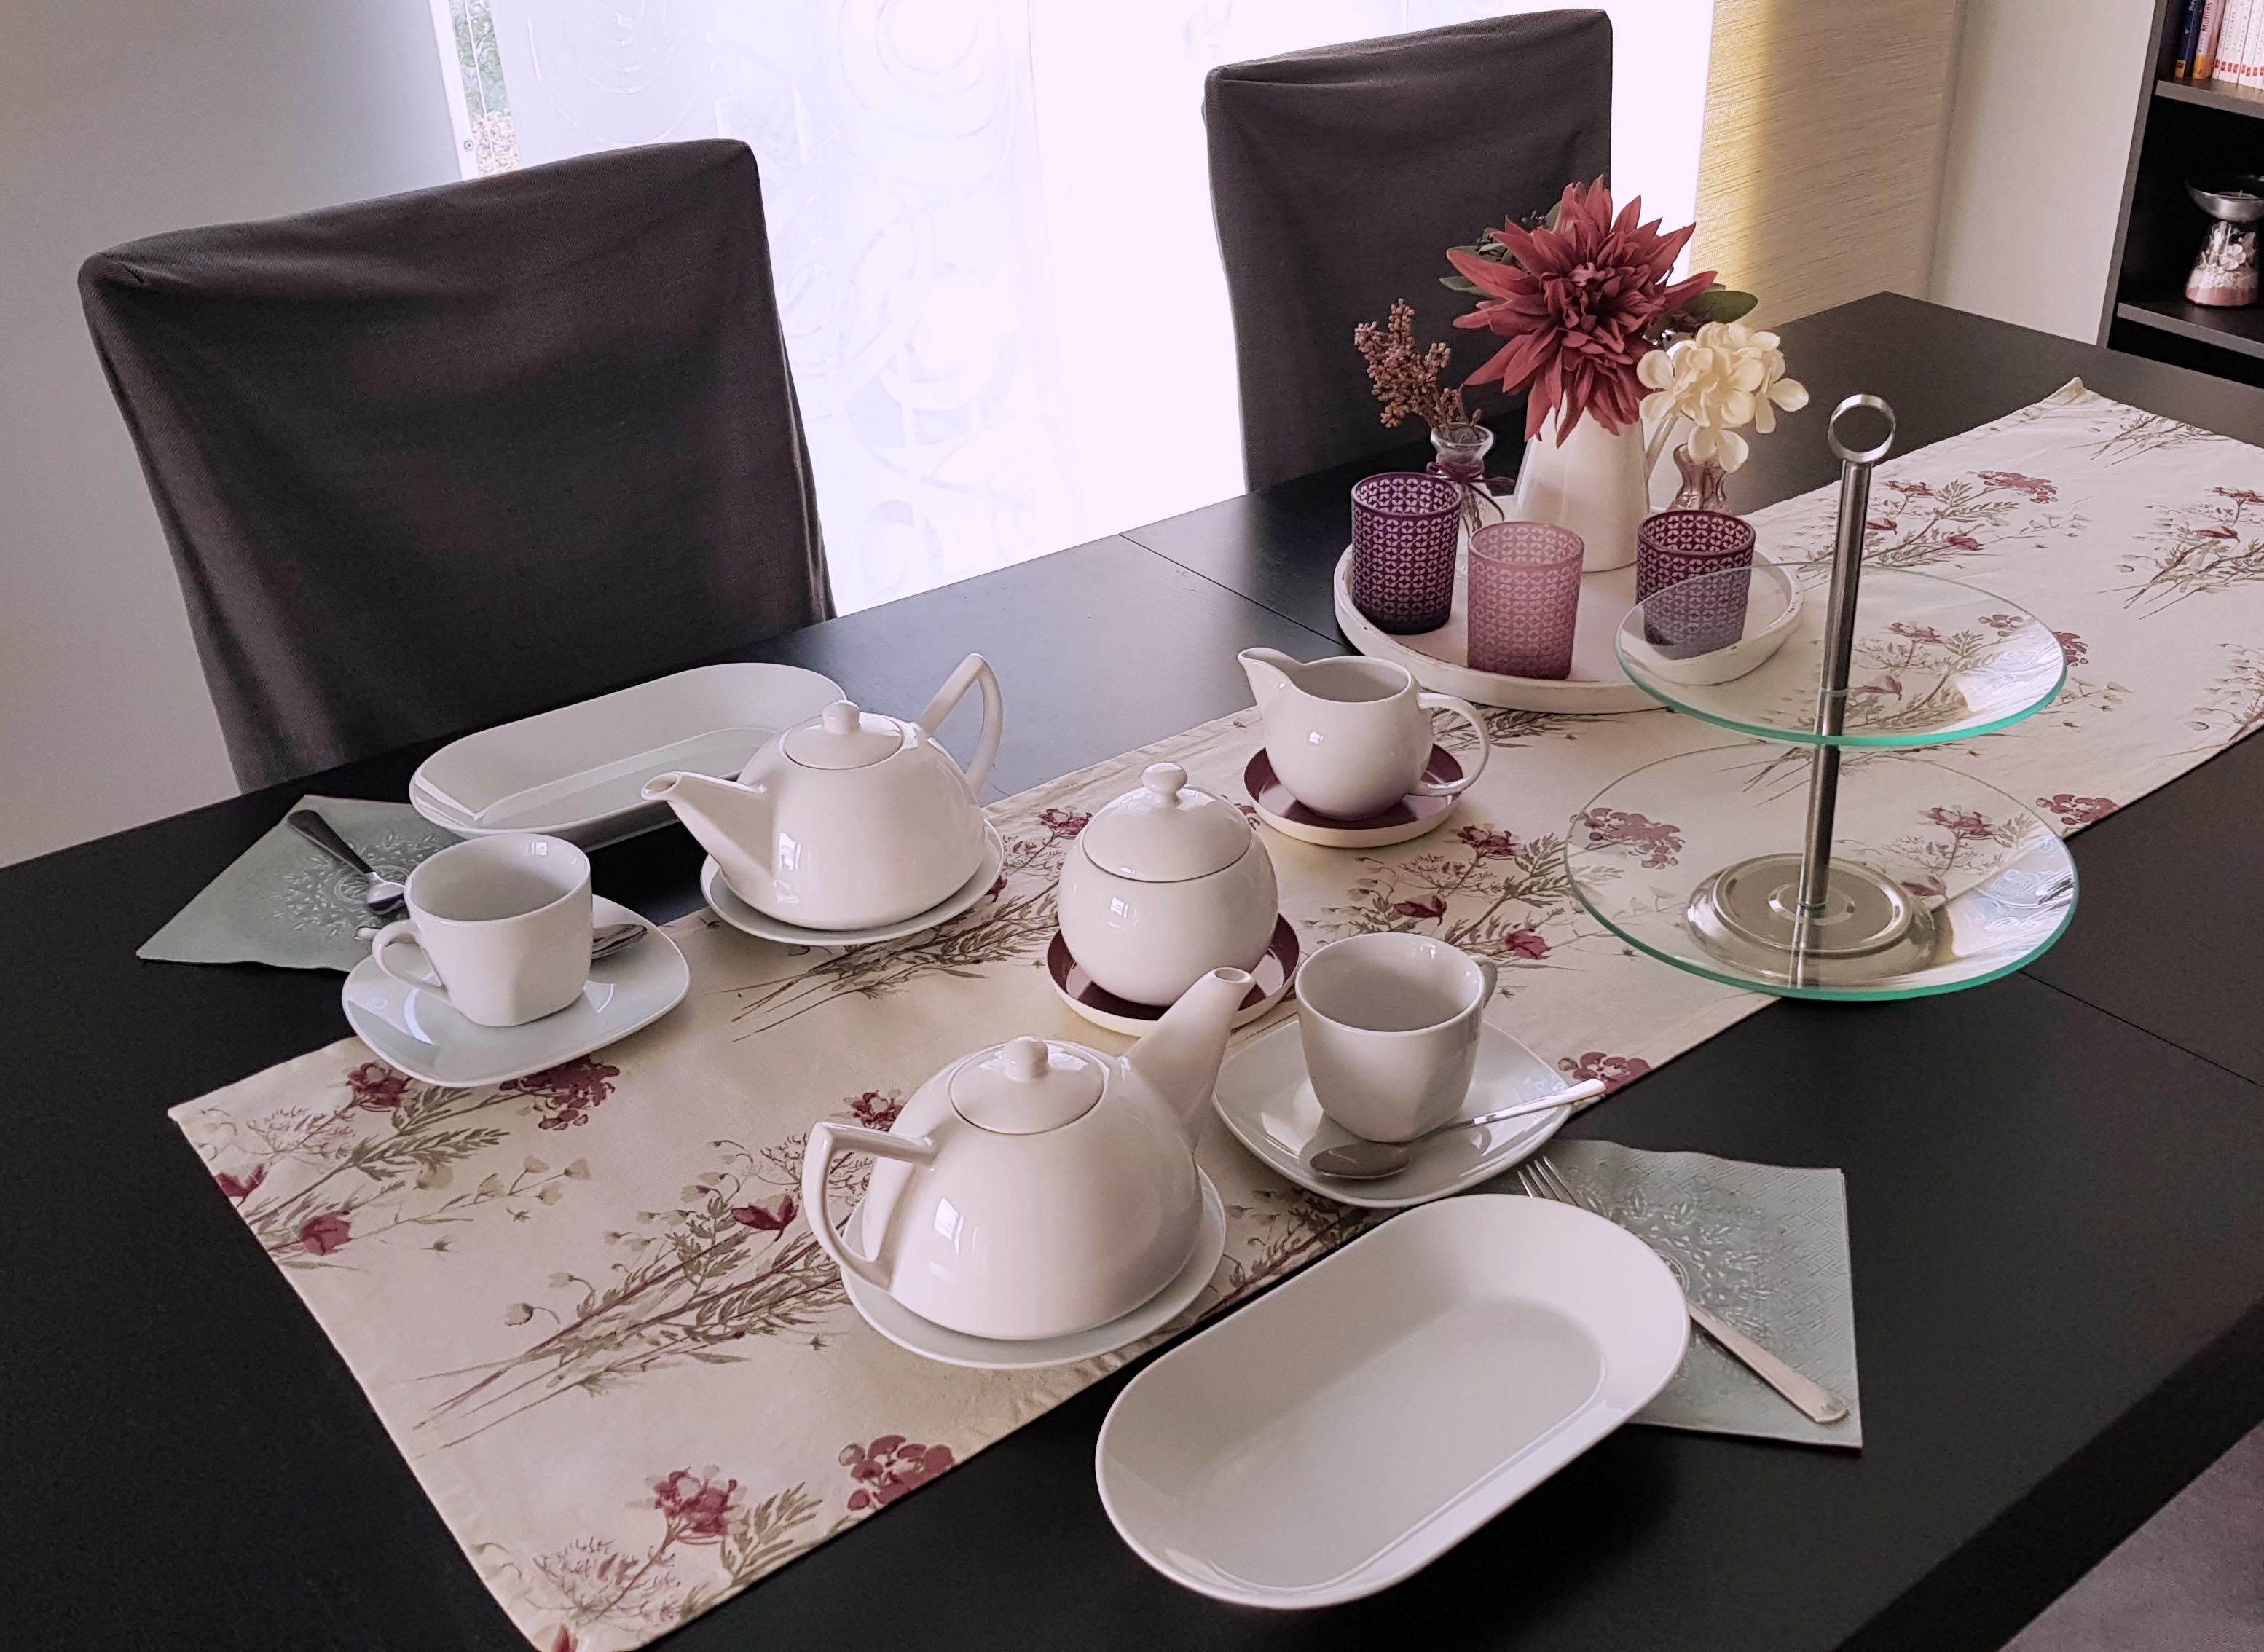 Gedeckter Tisch für die Teatime zu zweit | Home: Dining | Pinterest